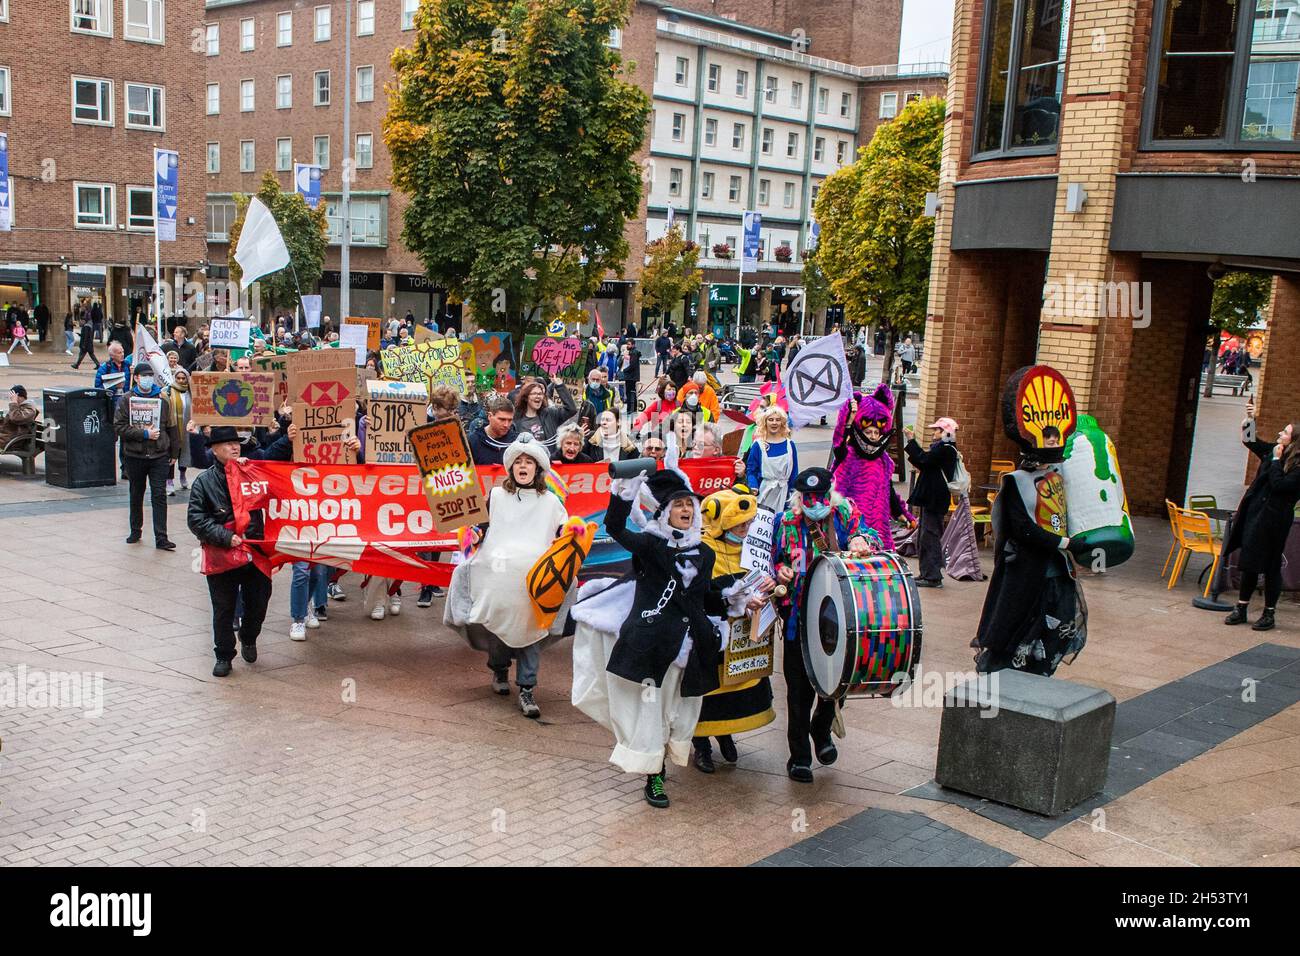 Coventry, West Midlands, Großbritannien. November 2021. Anlässlich der COP26-Konferenz in Glasgow fand heute in Coventry ein Klimaprotest statt. Etwa 100 Menschen protestierten im Stadtzentrum von Coventry, bevor sie nach Birmingham weiterreisten, um sich dem Protest anzuschließen. Quelle: AG News/Alamy Live News Stockfoto